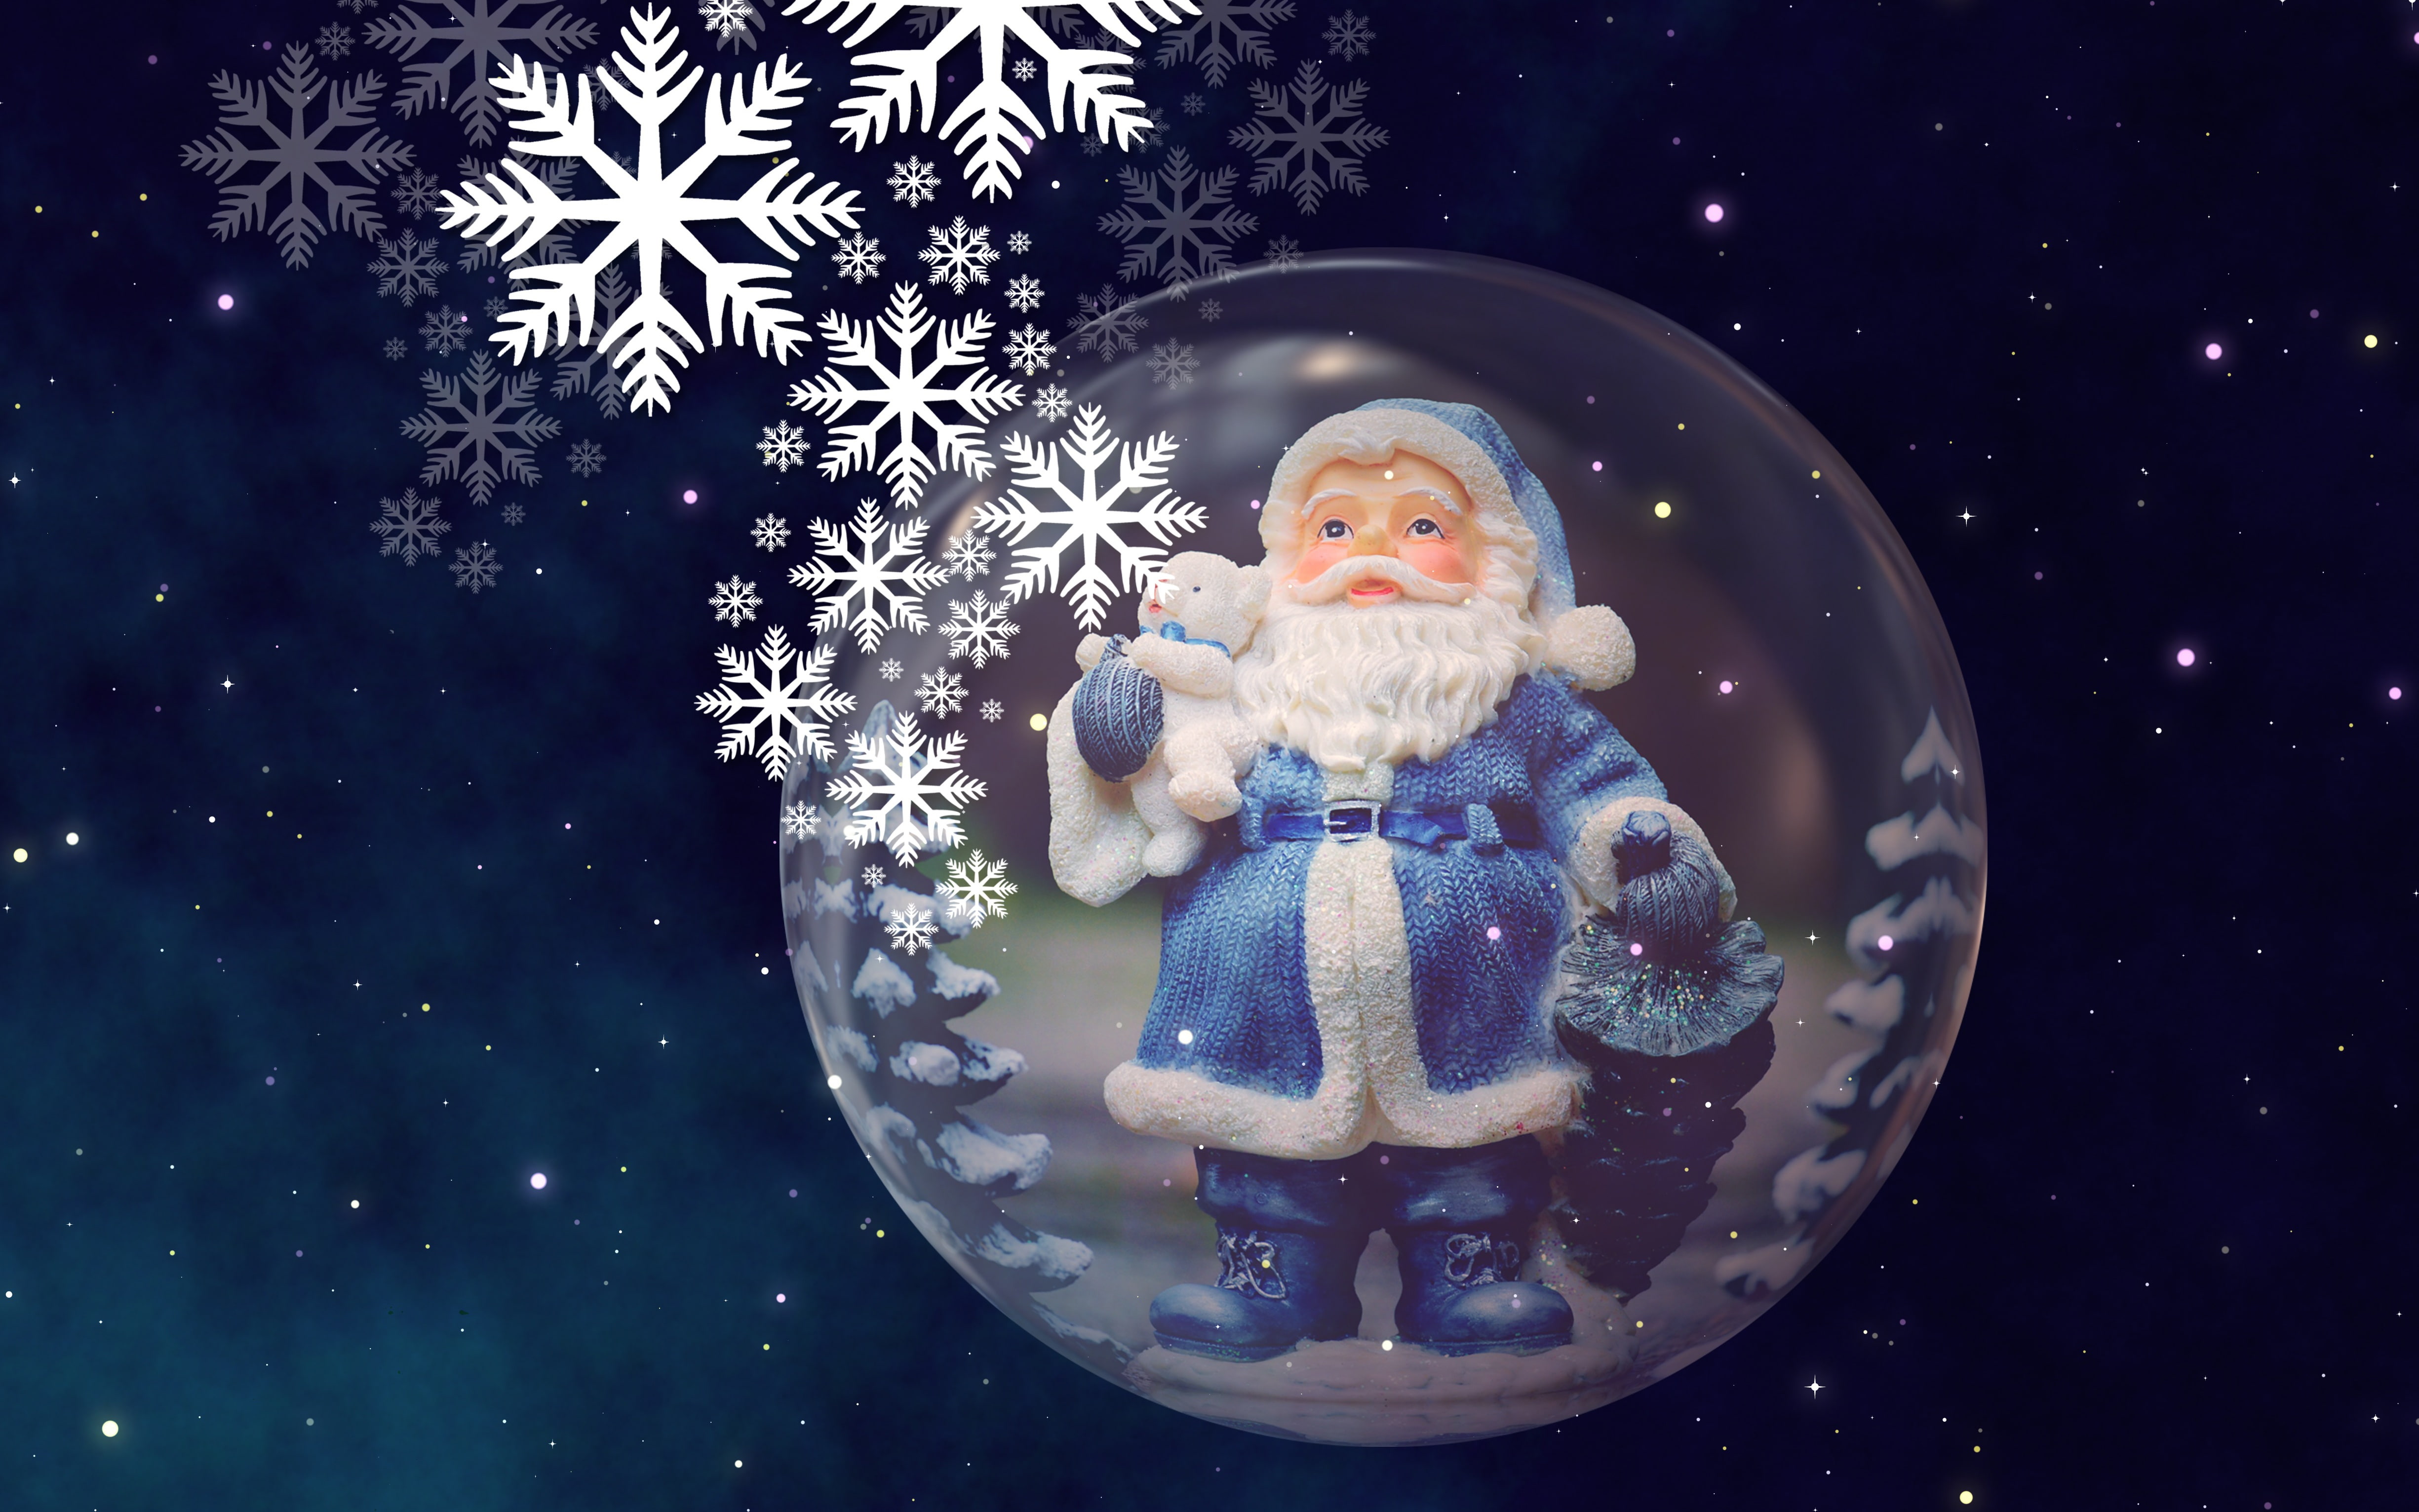 Santa Claus figurine, the sky, space, stars, flight, snowflakes